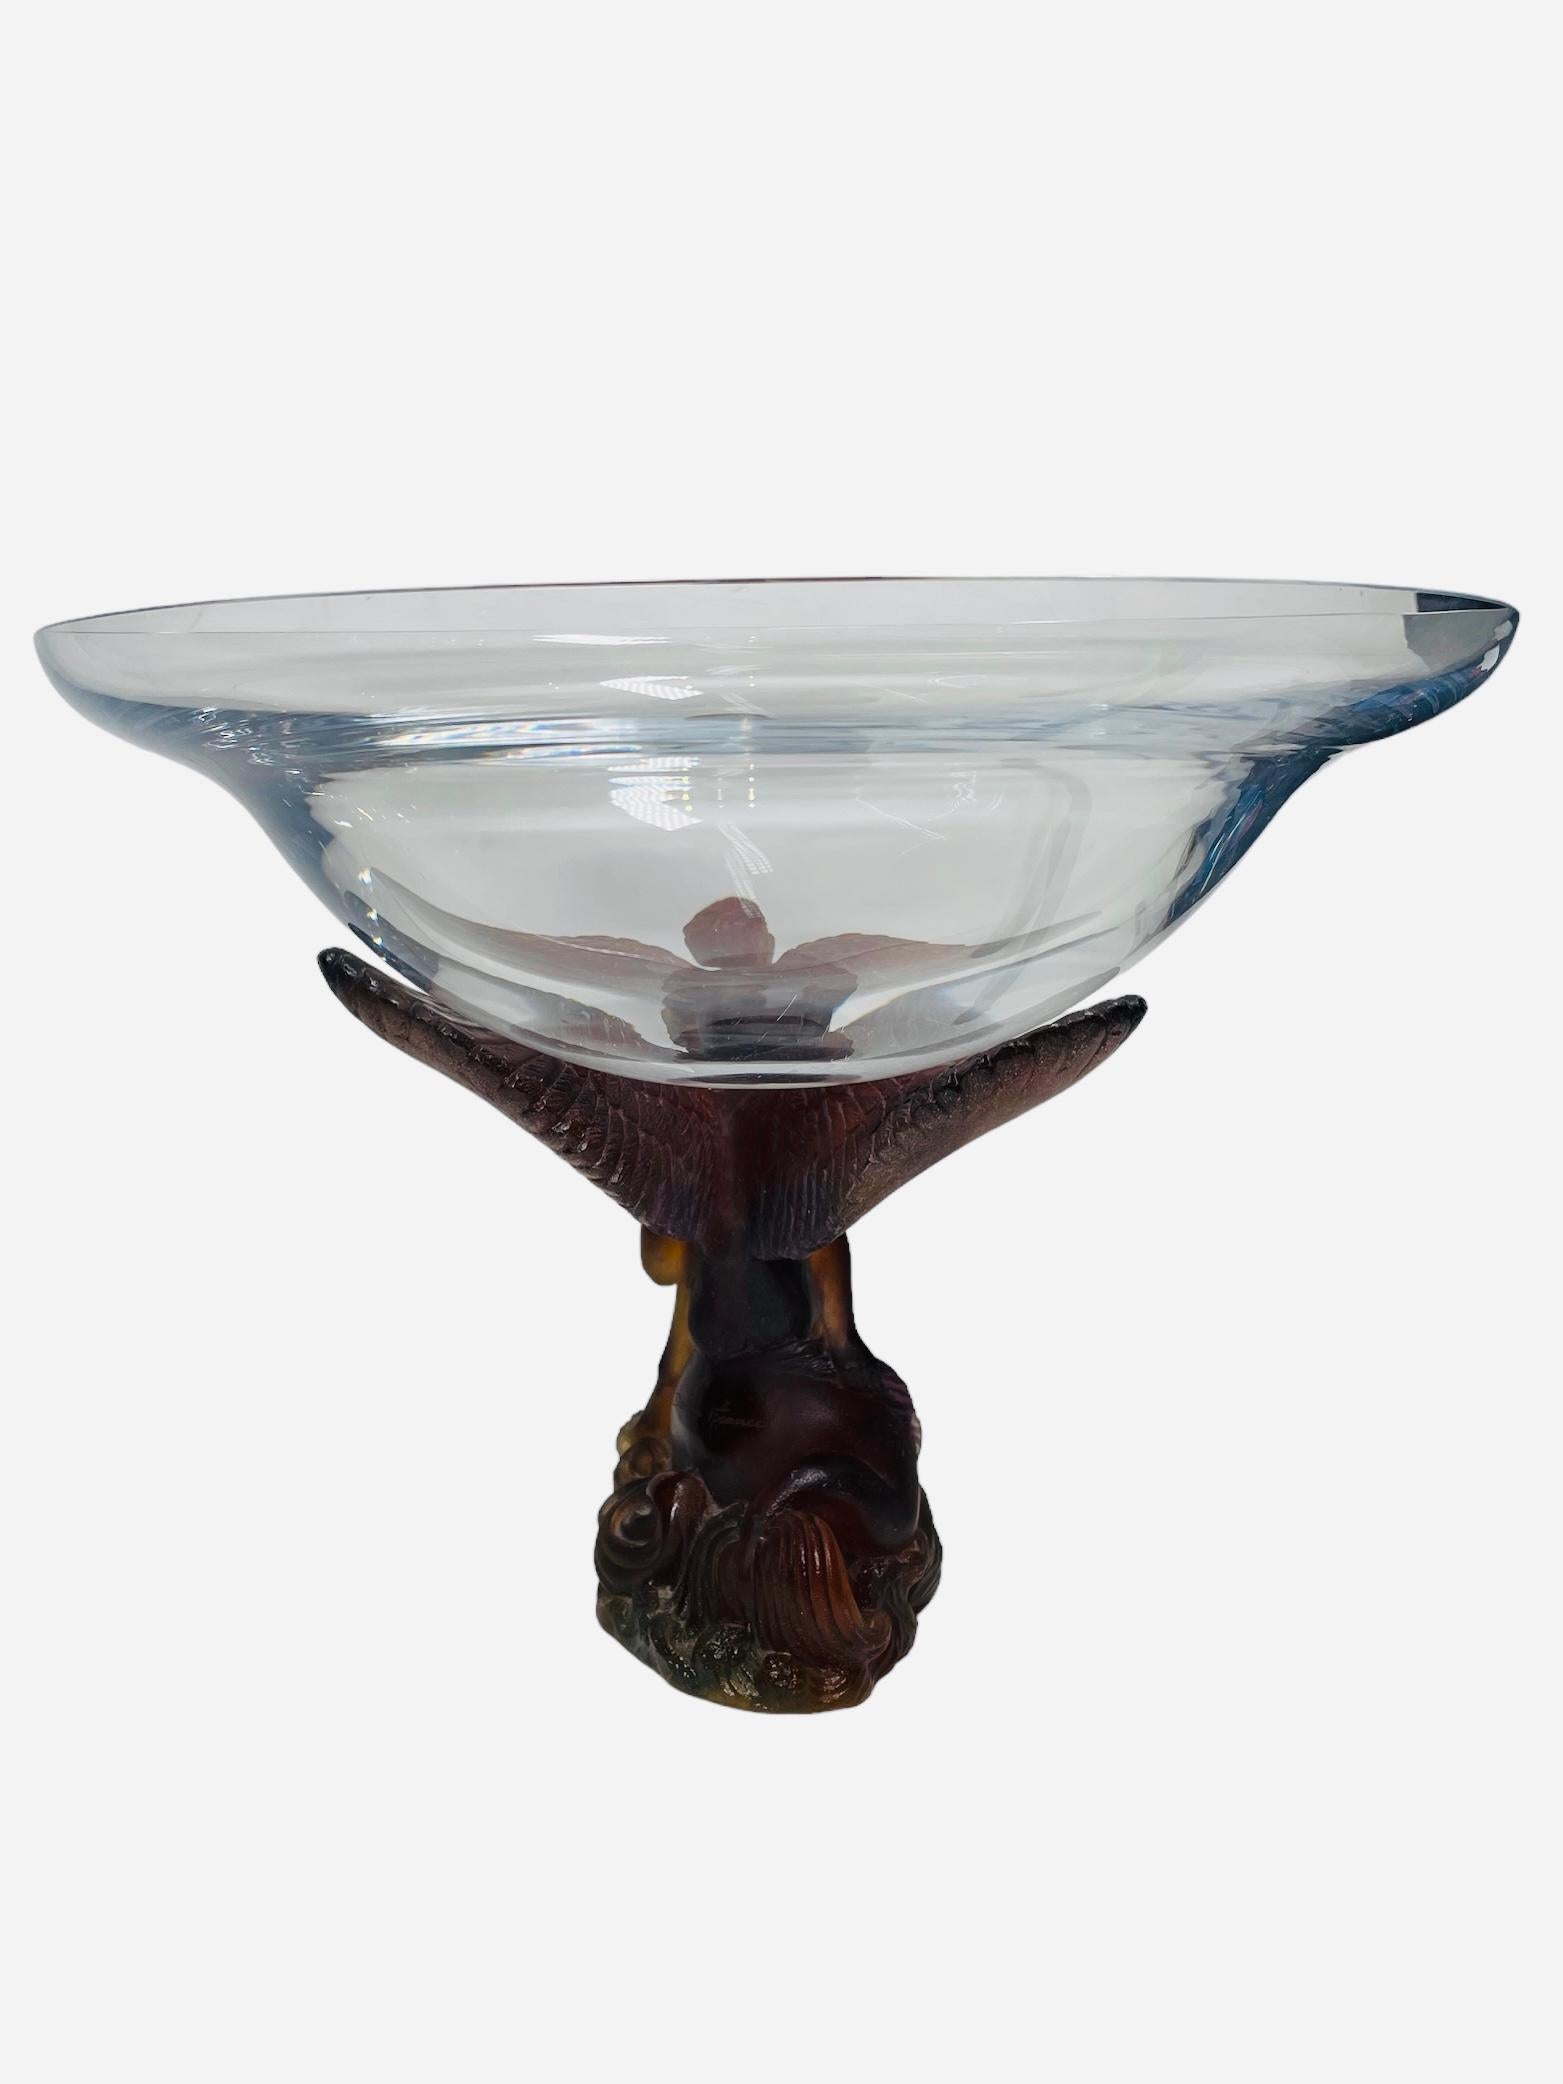 Daum Pate de Verre Crystal Angel Sculpture Compote/Bowl For Sale 3